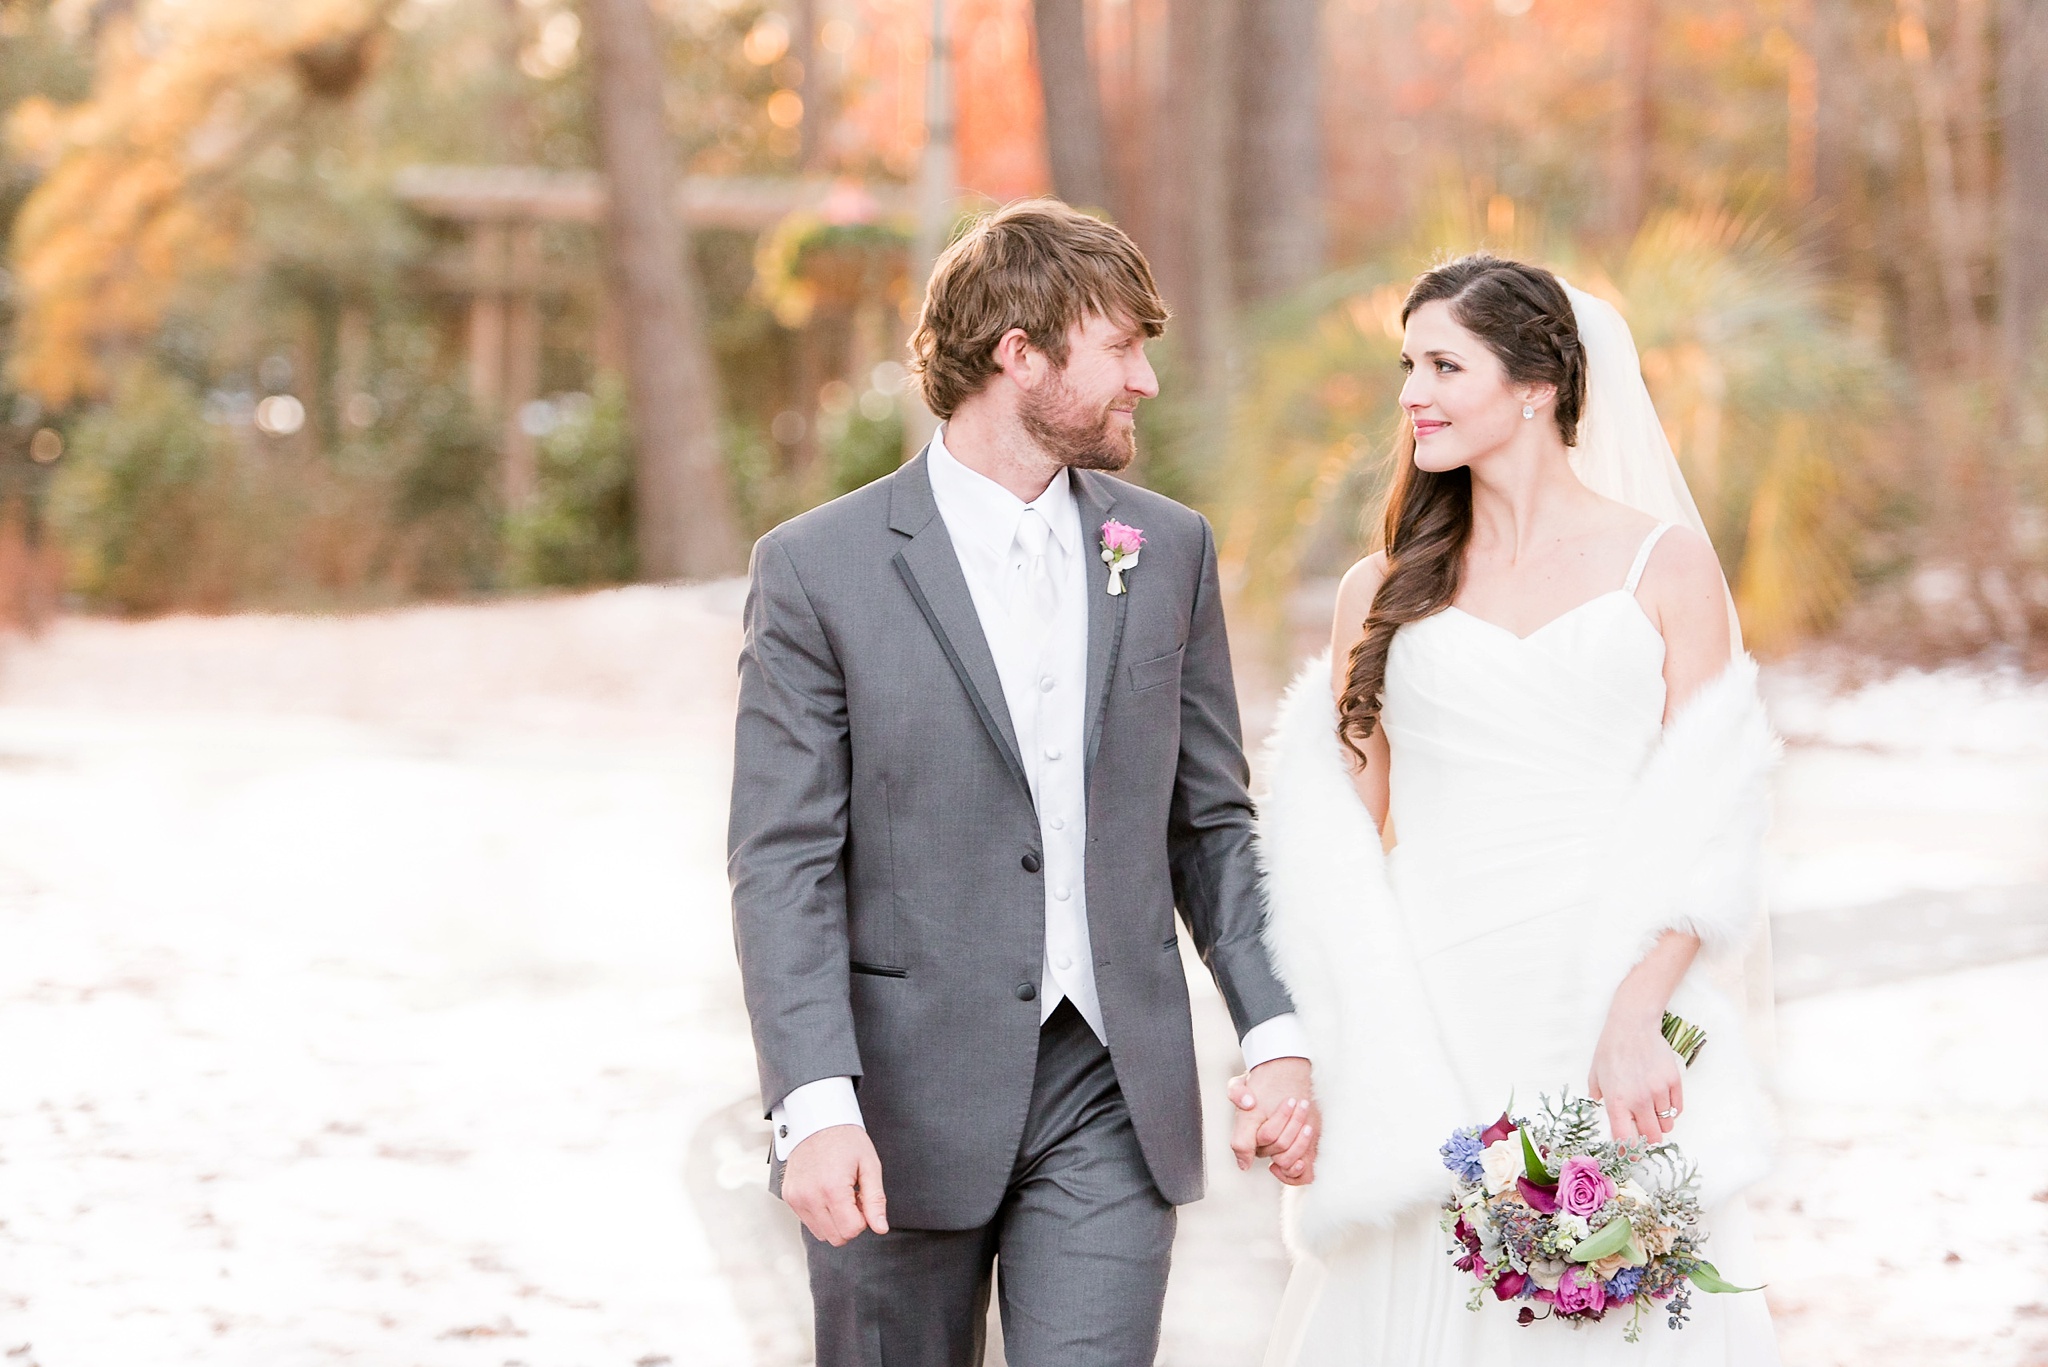 Snowy Winter Aldridge Gardens Wedding | Birmingham Alabama Wedding Photographers_0047.jpg